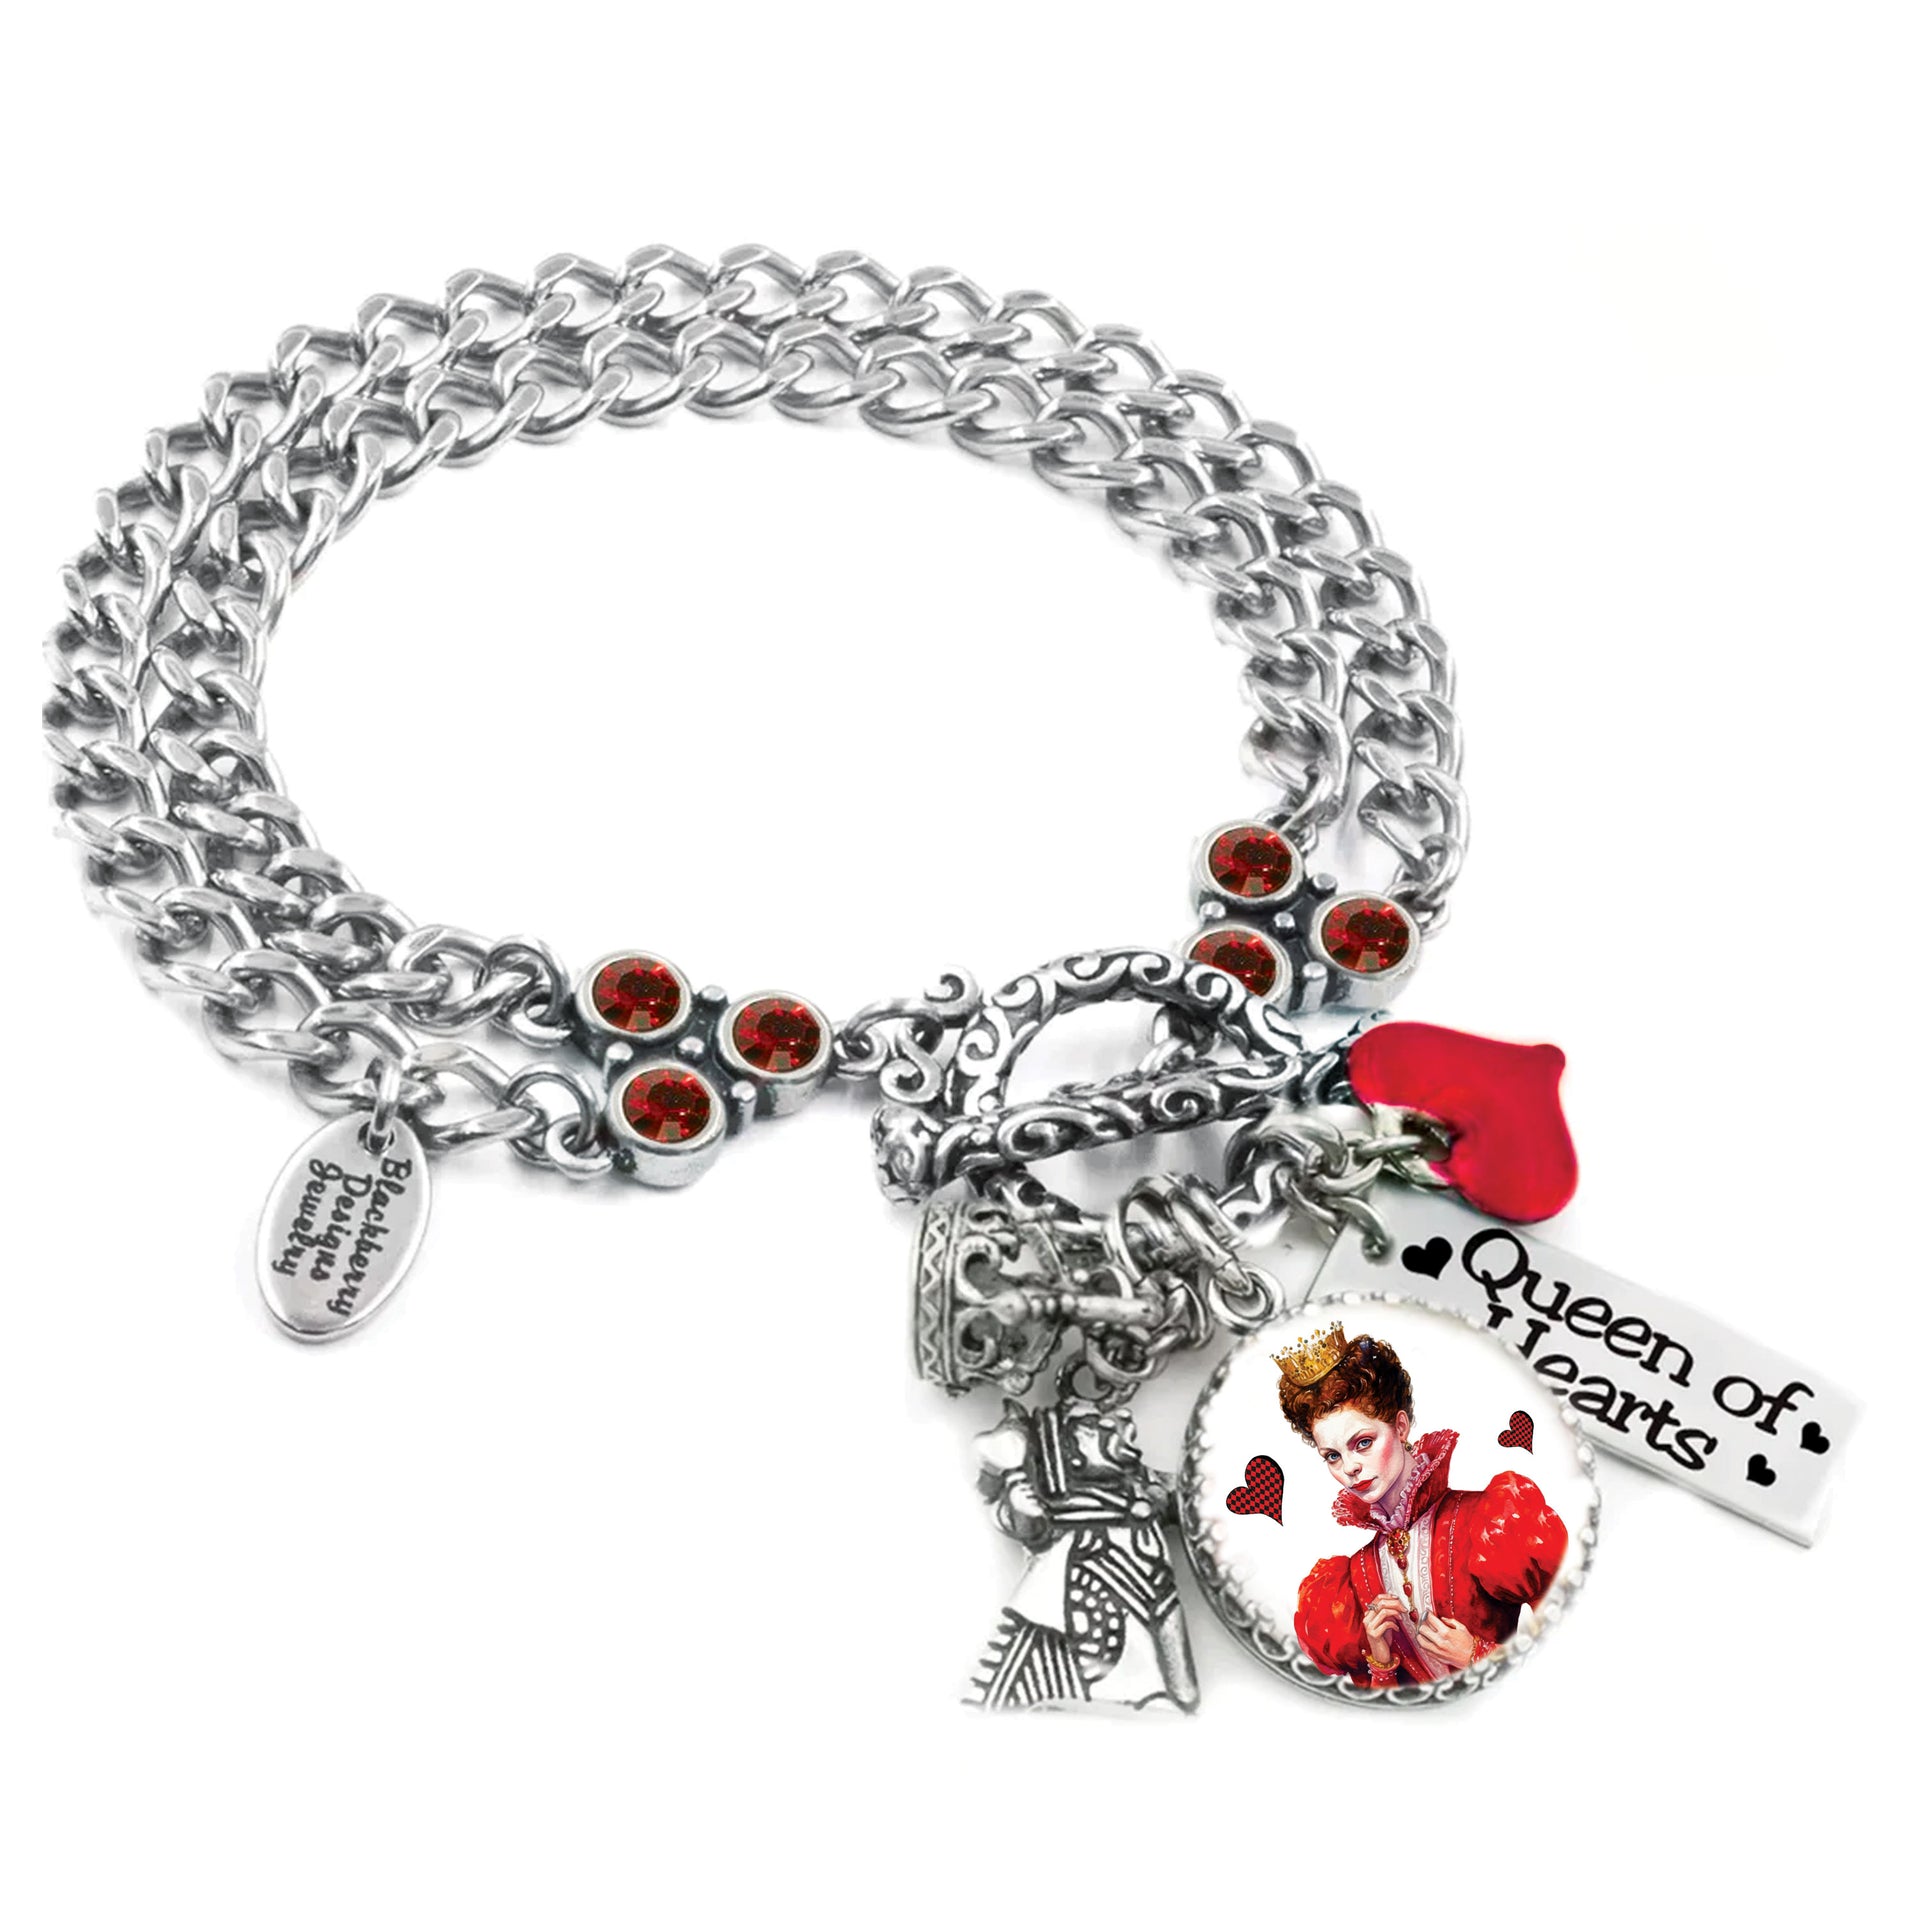 queen of hearts charm bracelet